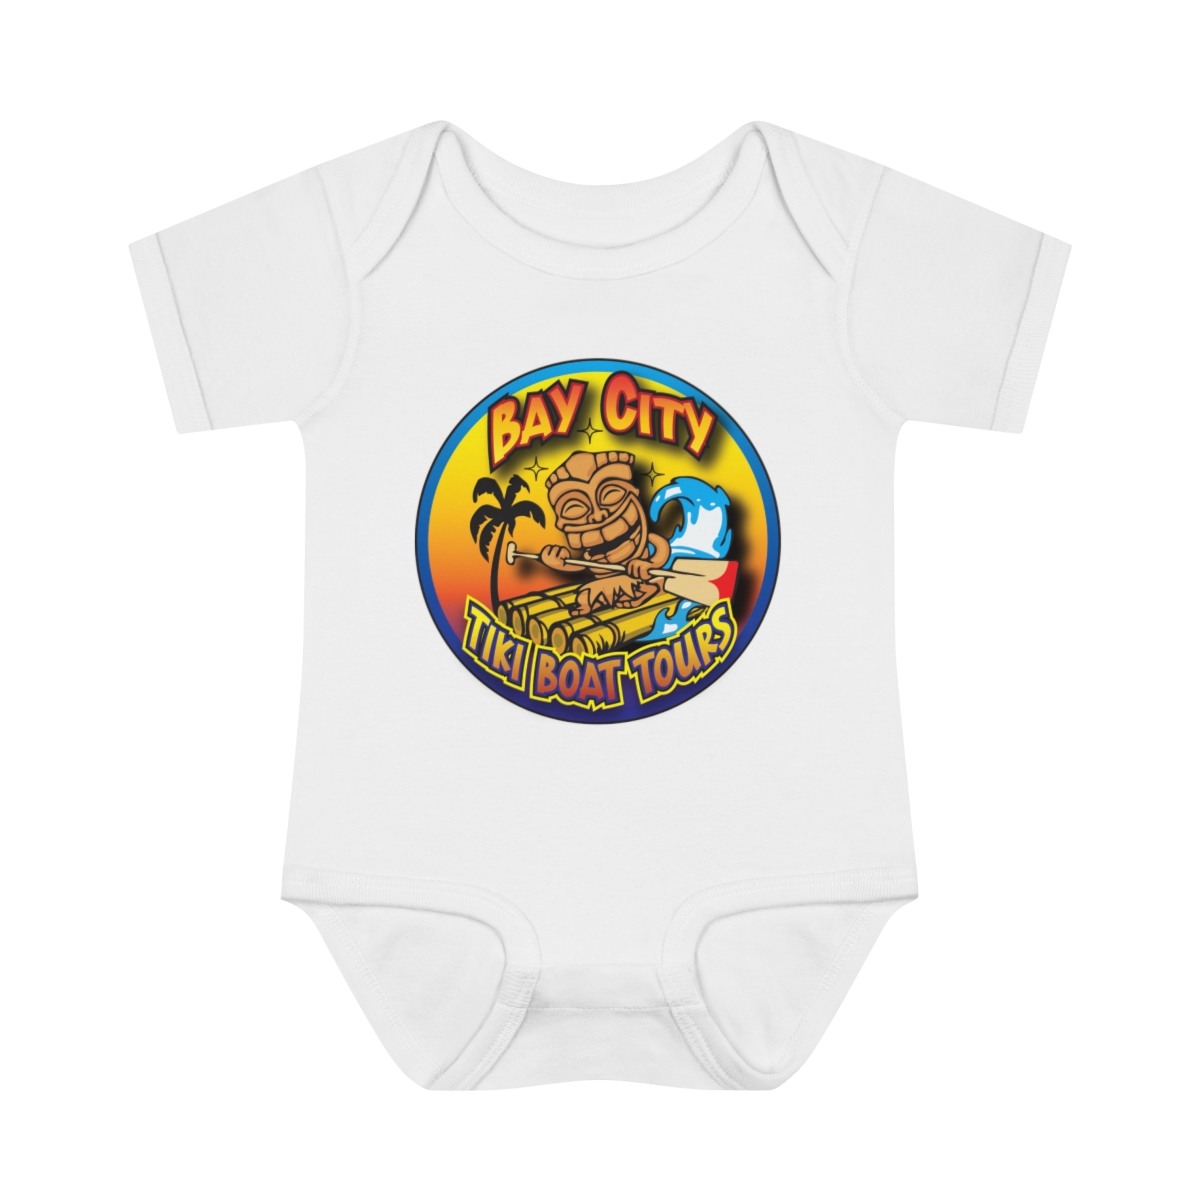 Infant Baby Rib Bodysuit product thumbnail image